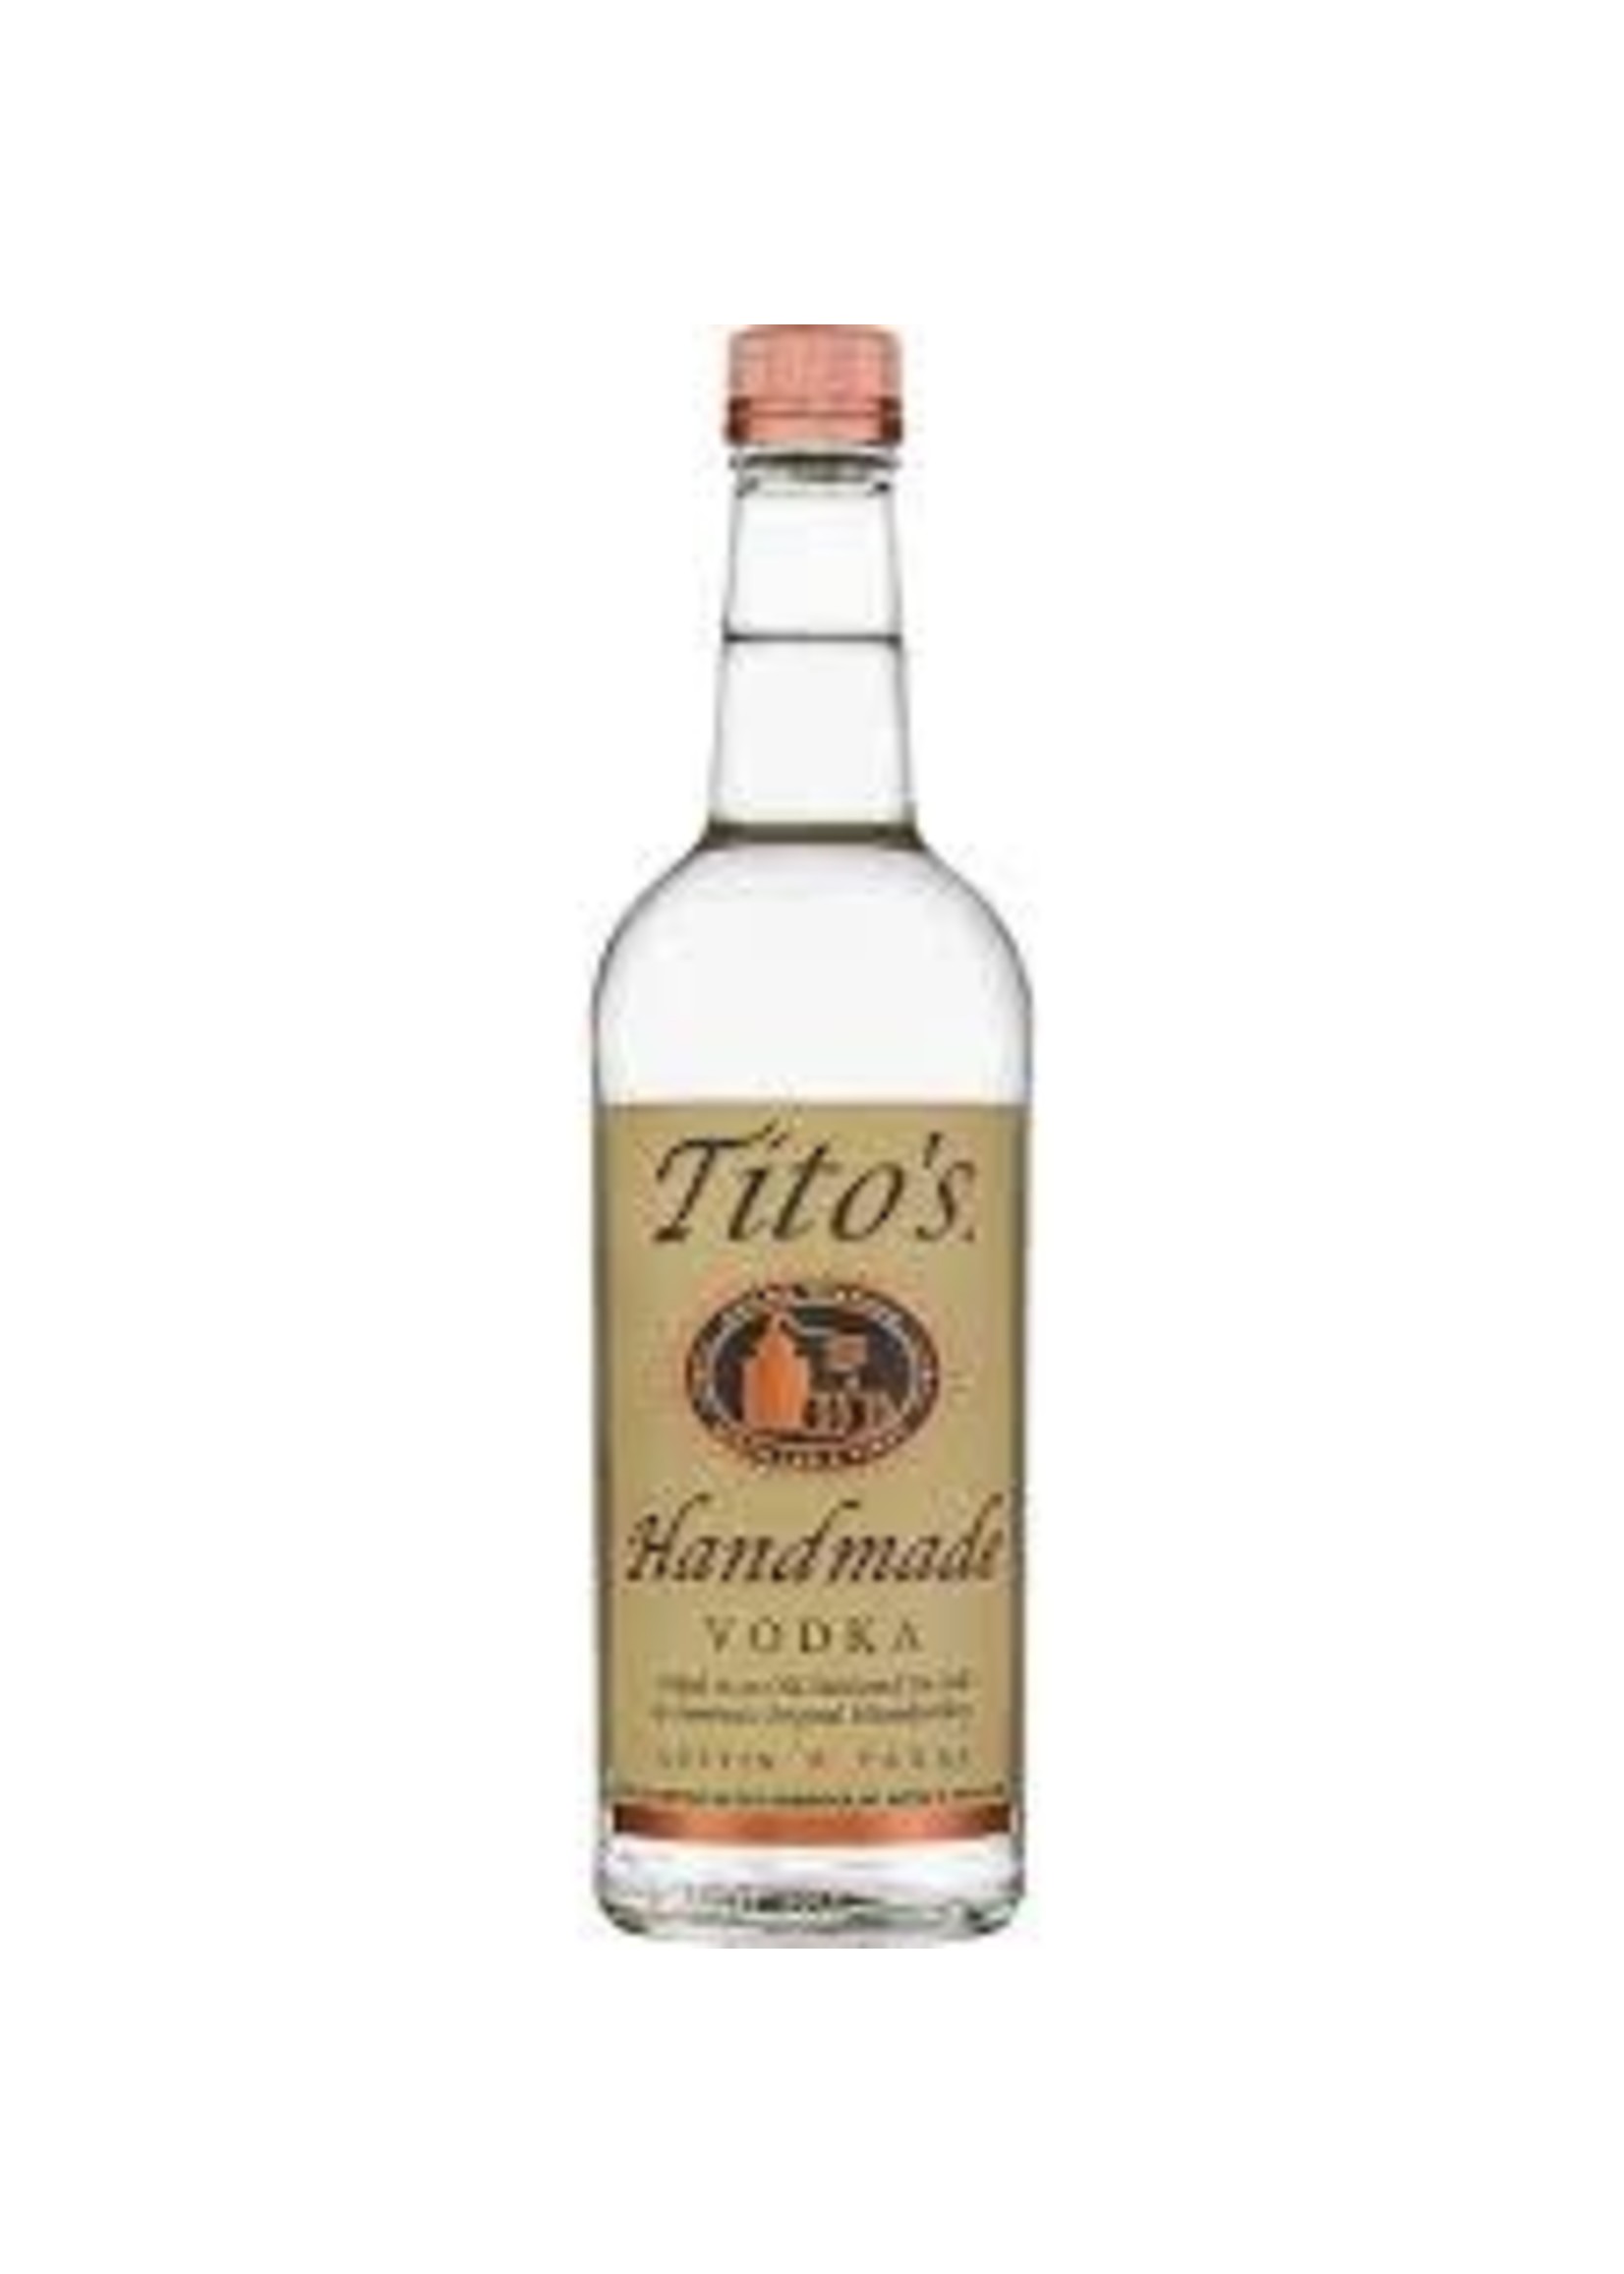 TITO'S TITO'S HANDMADE VODKA   .750L